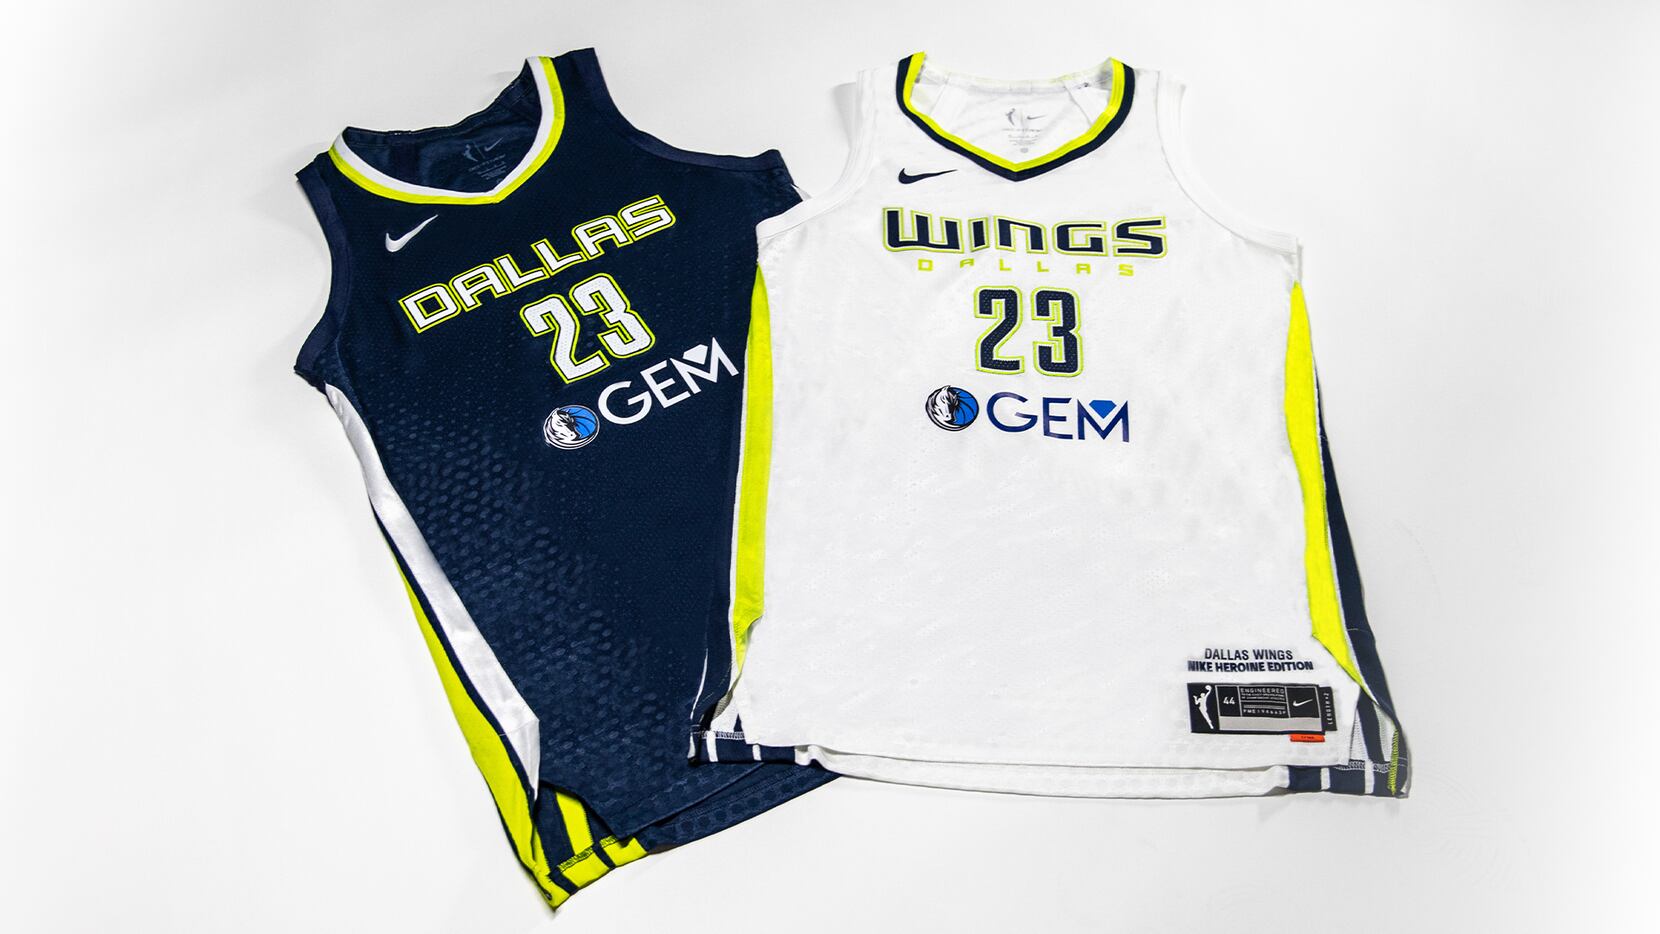 Dallas Mavericks become jersey sponsor for Dallas Wings 